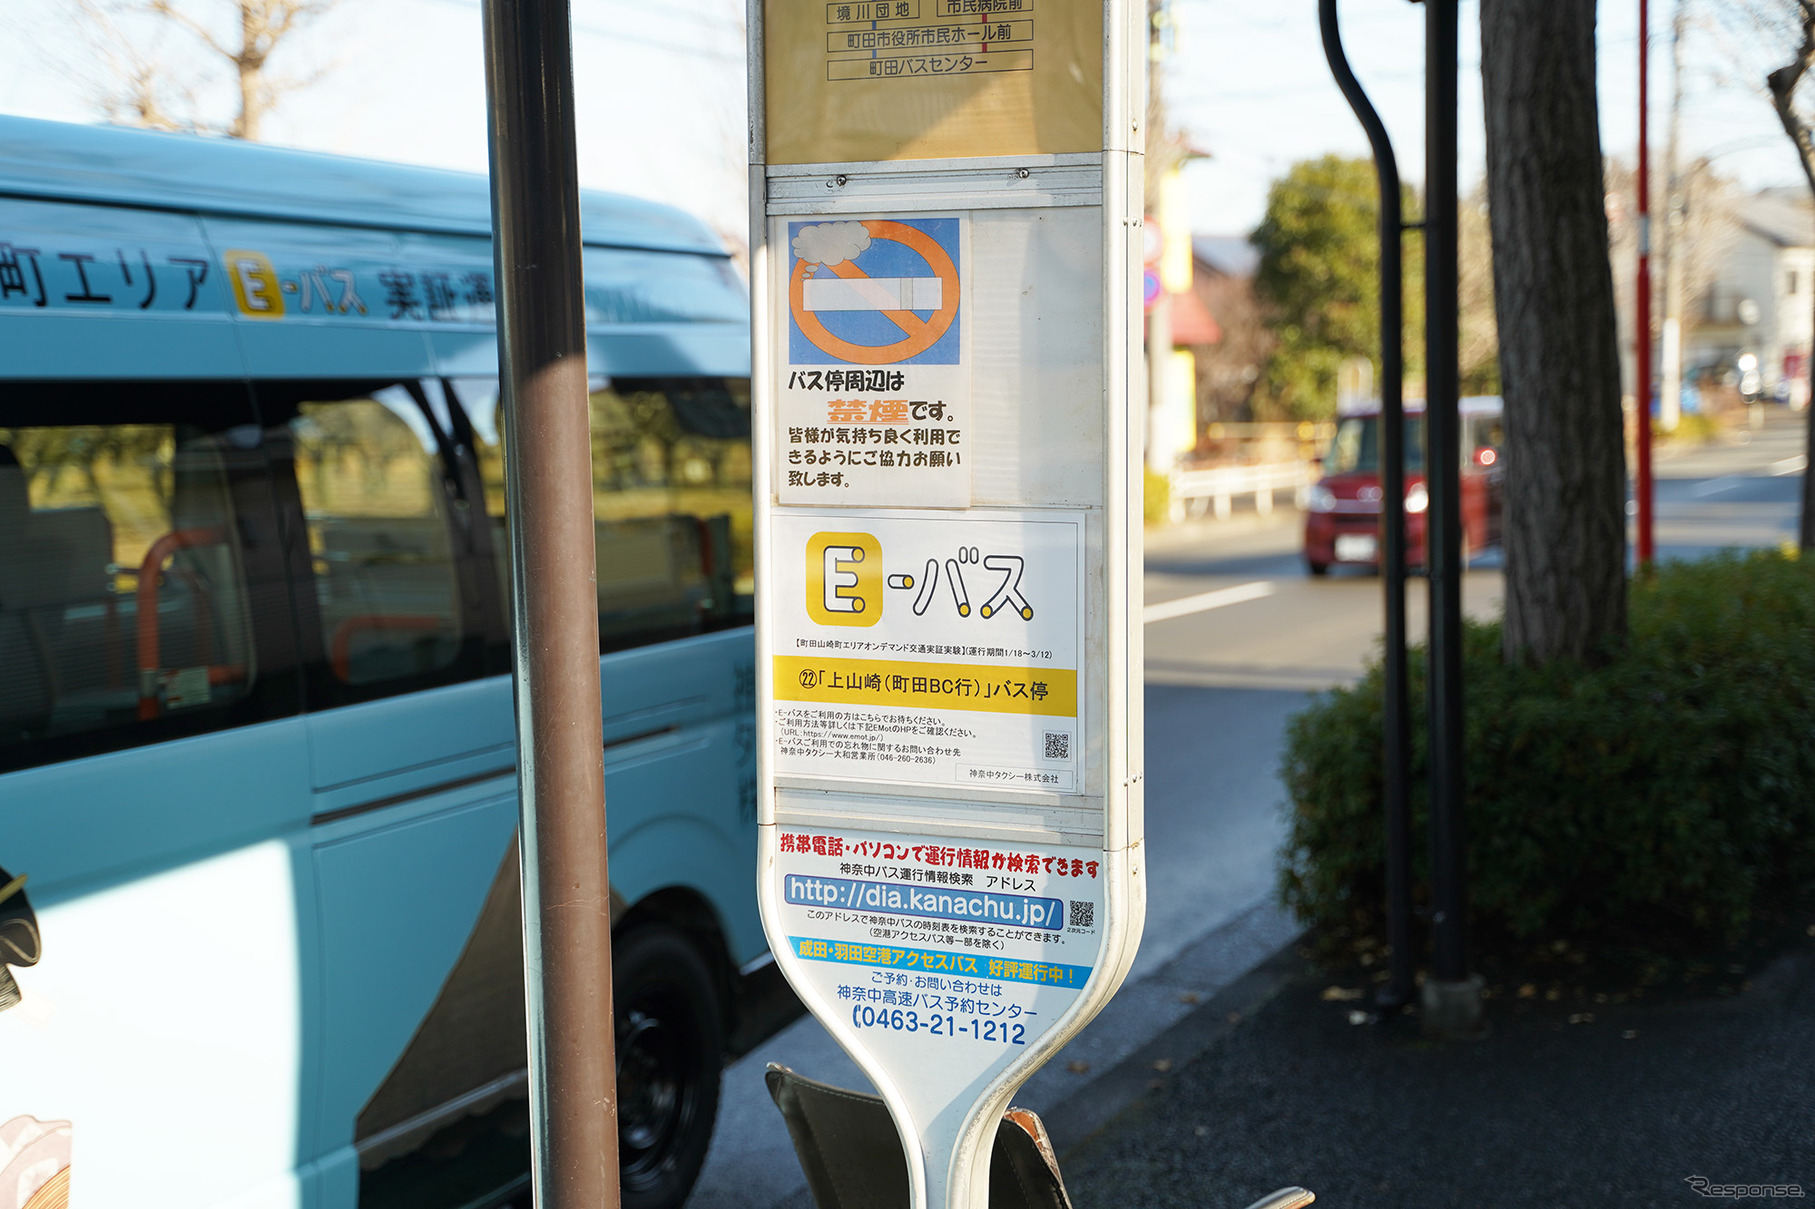 バス停の「E-バス」案内標識